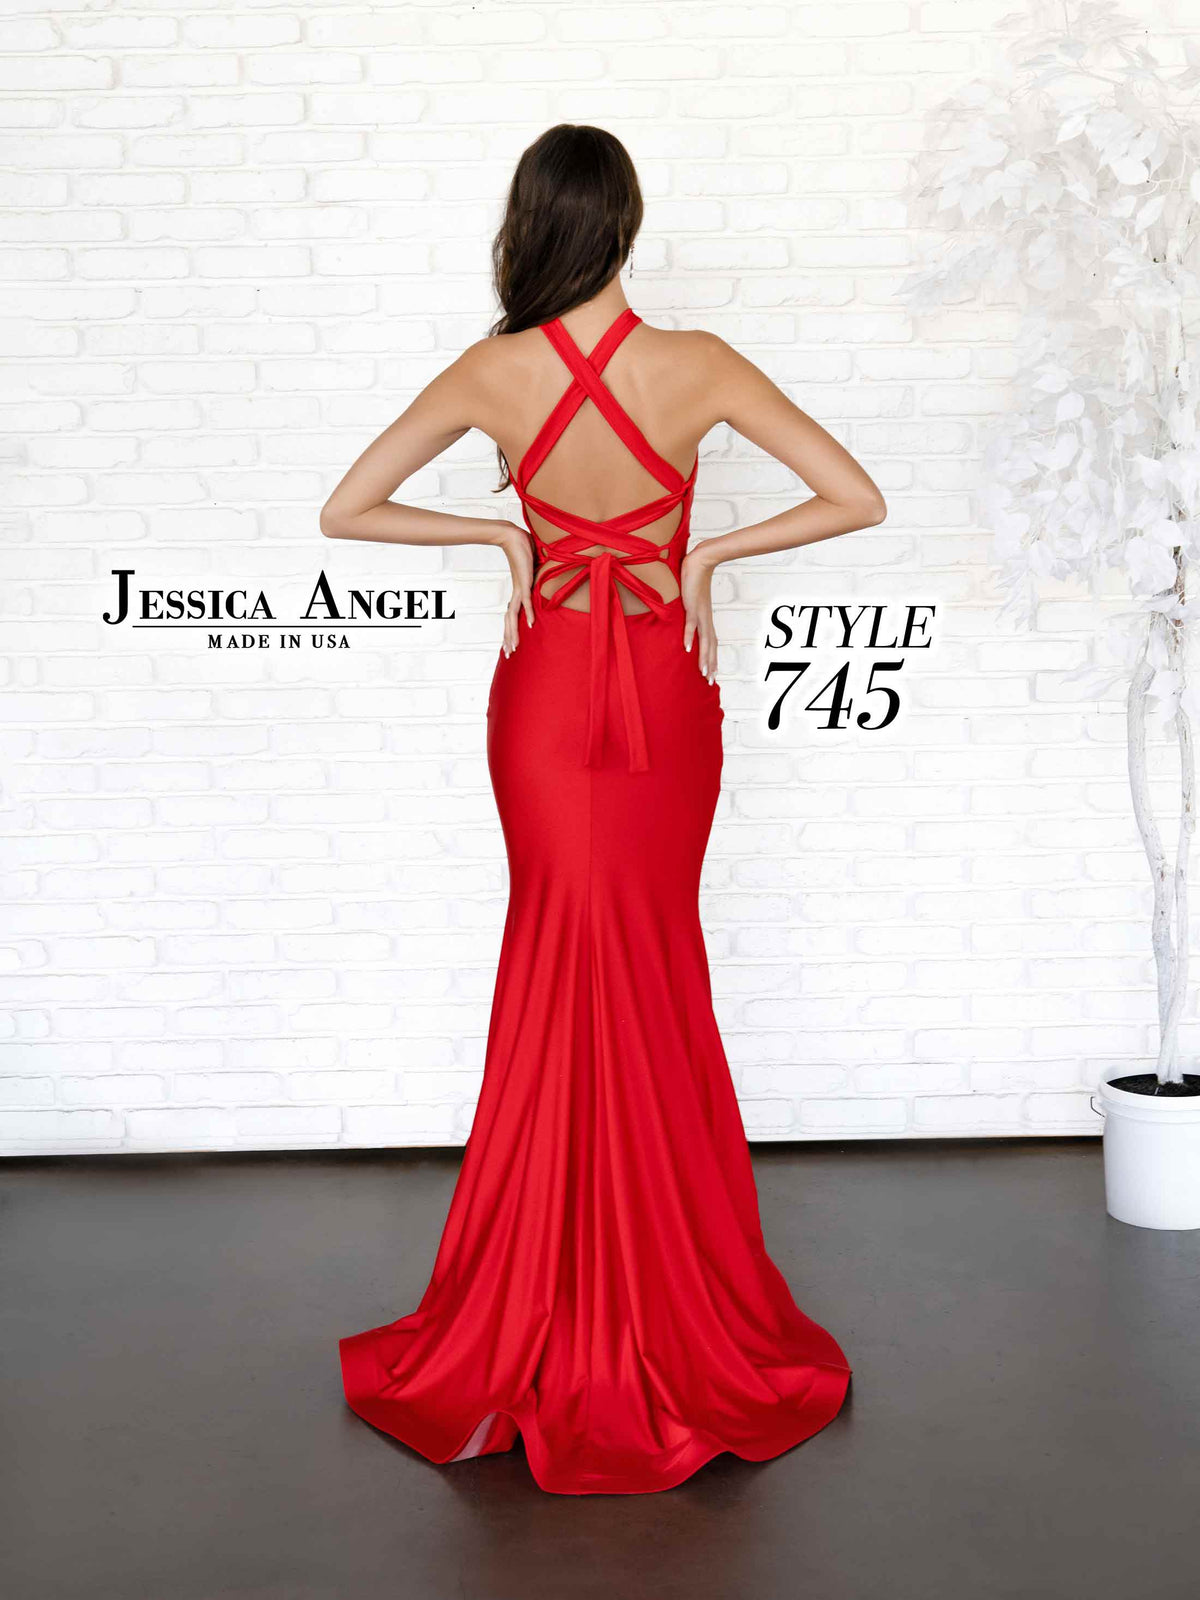 Jessica Angel 745